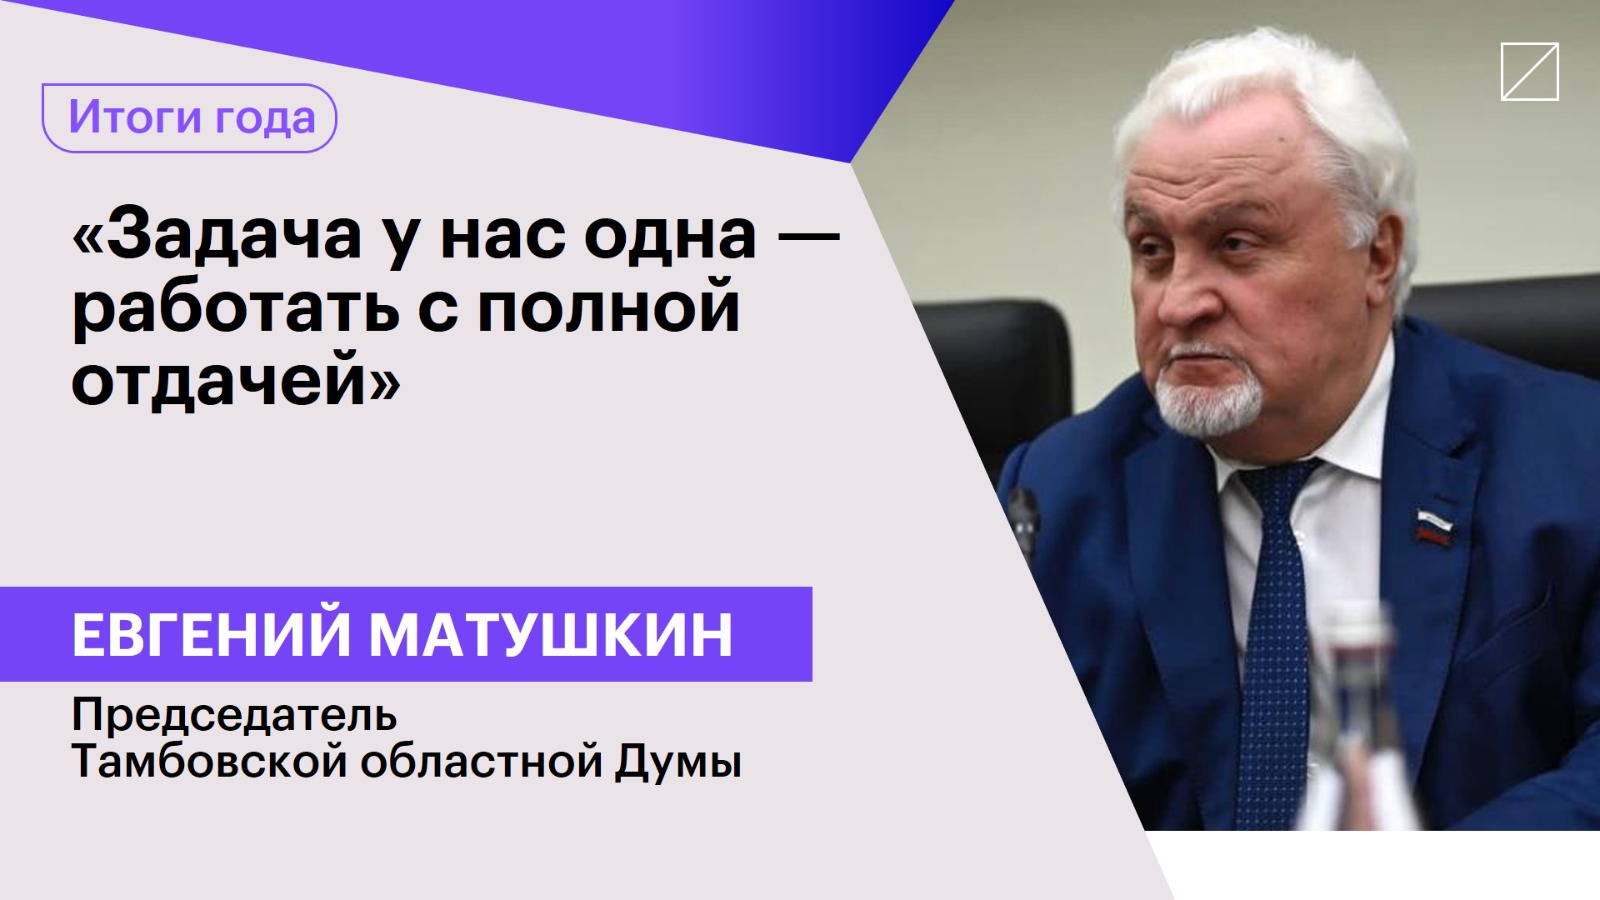 Евгений Матушкин: «Задача у нас одна — работать с полной отдачей»